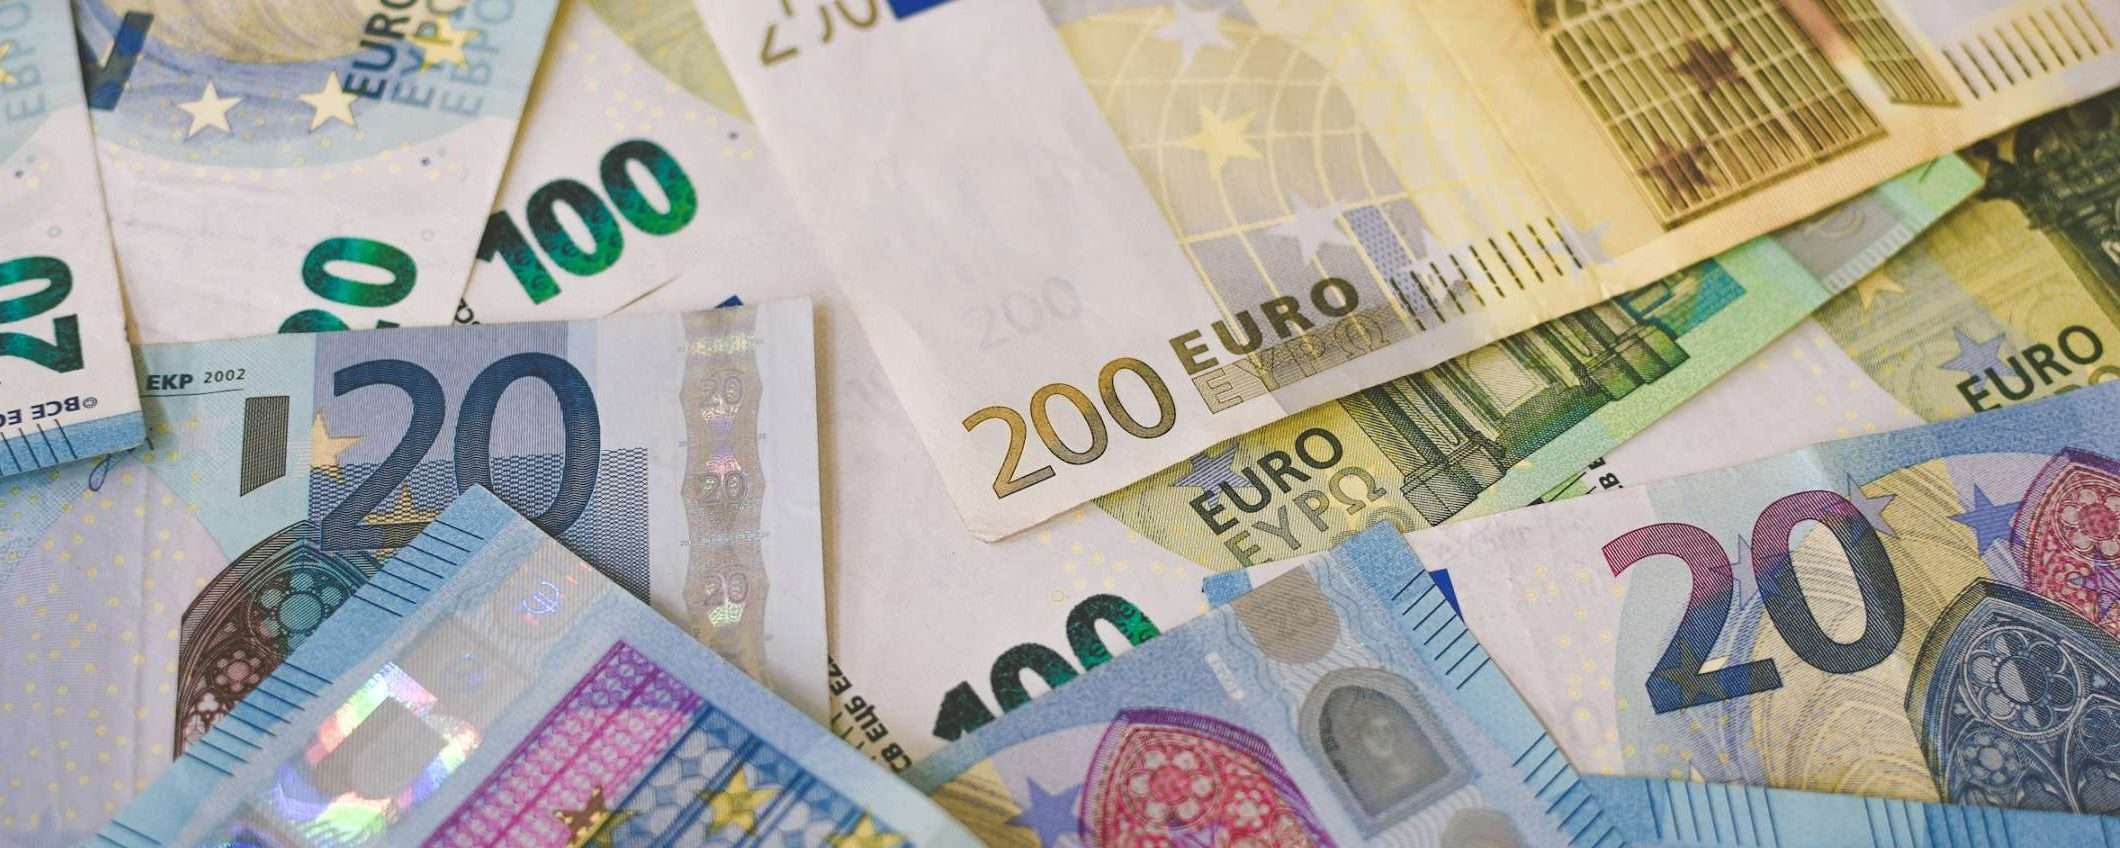 Bonifici istantanei in euro senza costi aggiuntivi